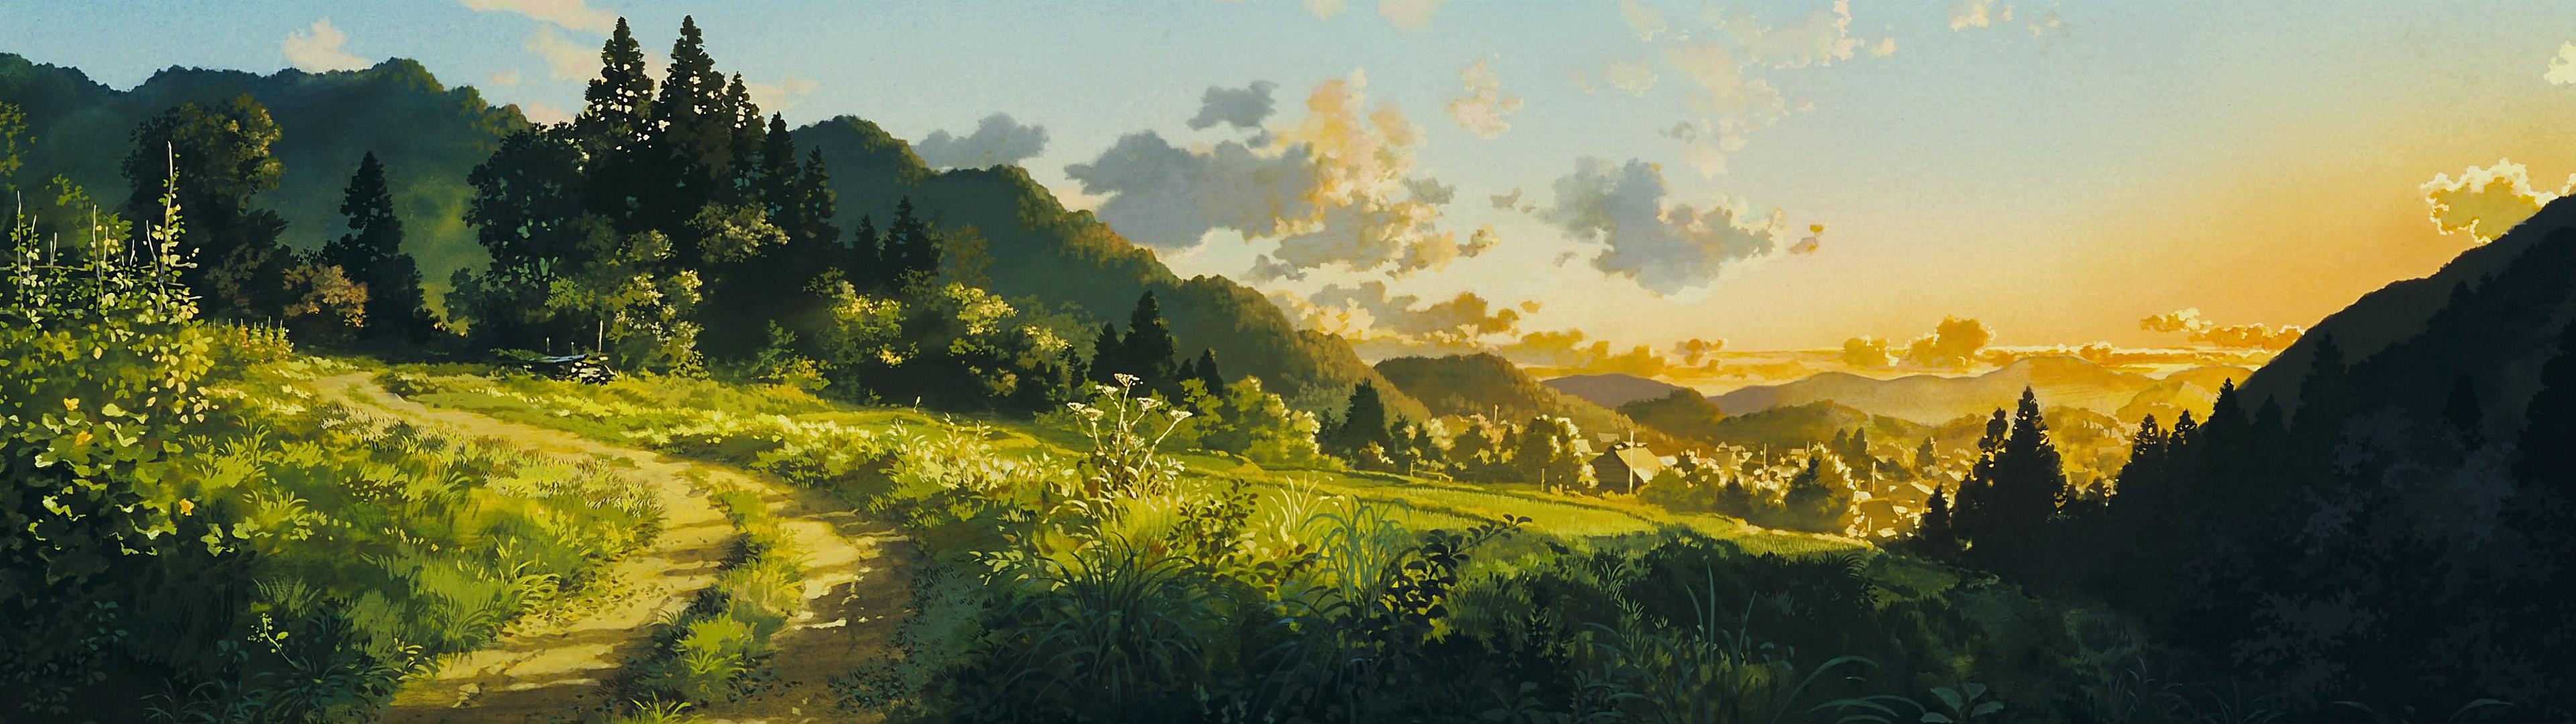 Ghibli dual wallpapers, Dual screen setup, Studio Ghibli, Artistic backgrounds, 3840x1080 Dual Screen Desktop